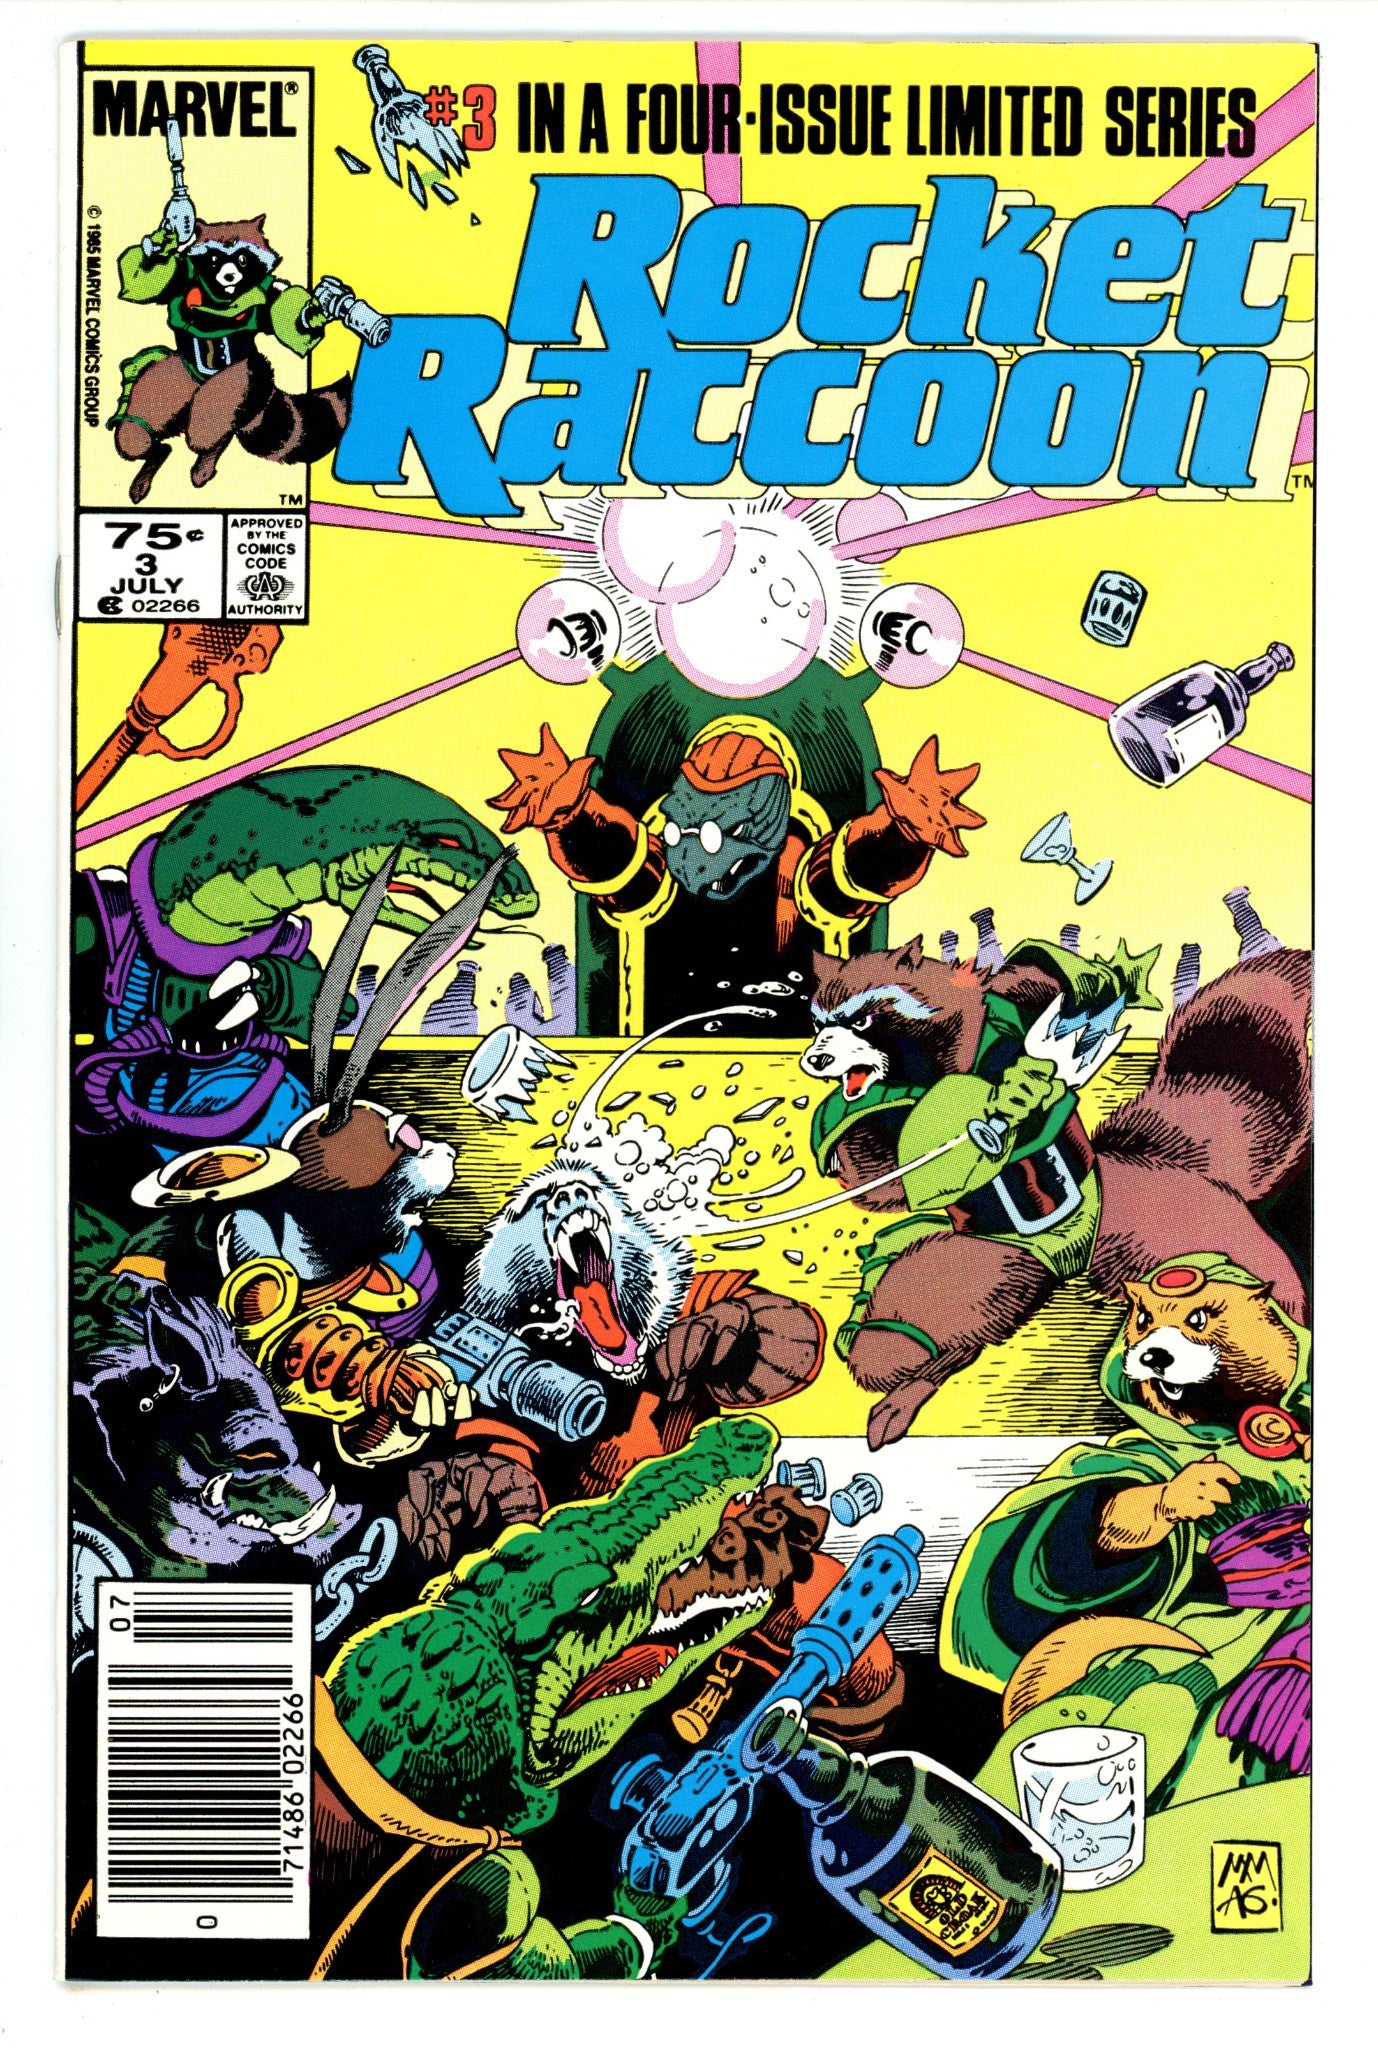 Rocket Raccoon Vol 1 3 FN+ (6.5) (1985) Newsstand 